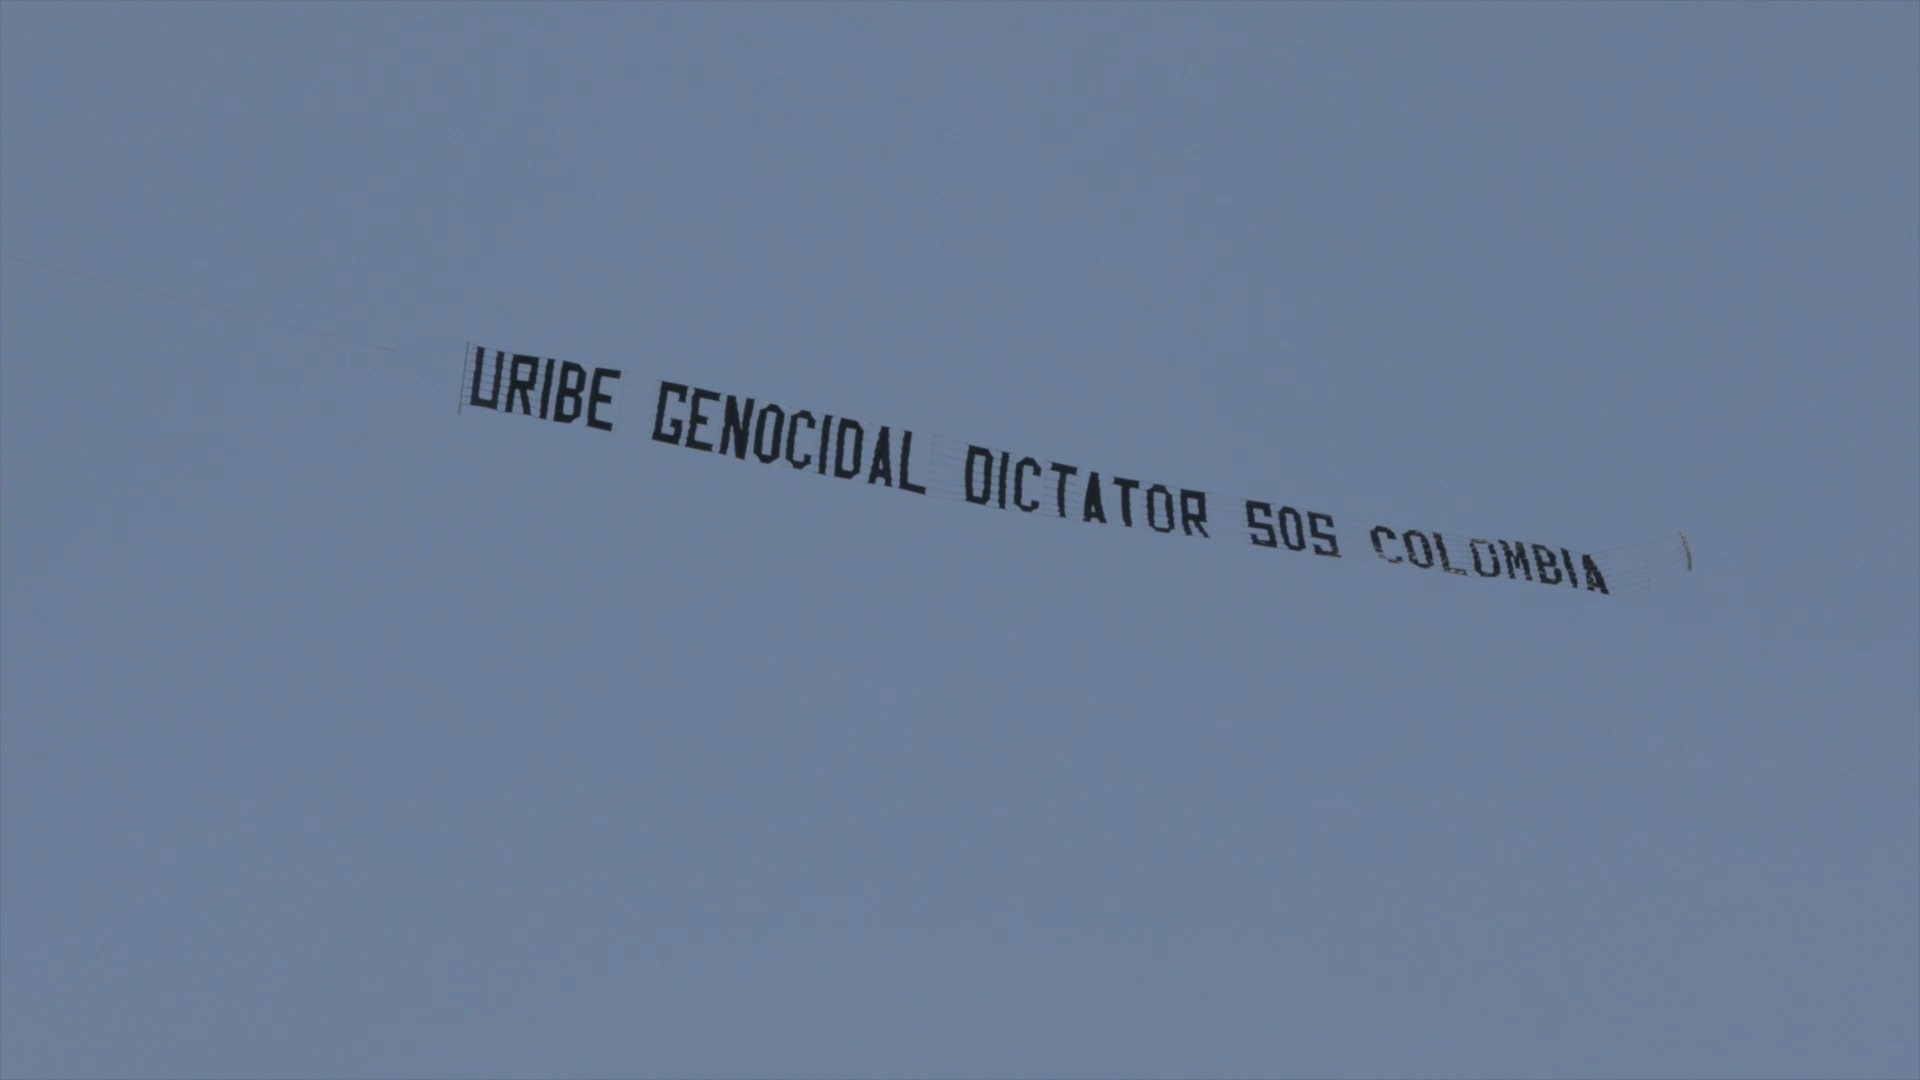 Beto Coral, el colombiano que creó la pancarta de "Uribe genocida dictador"  y la desplegó en un avión en Miami - CNN Video